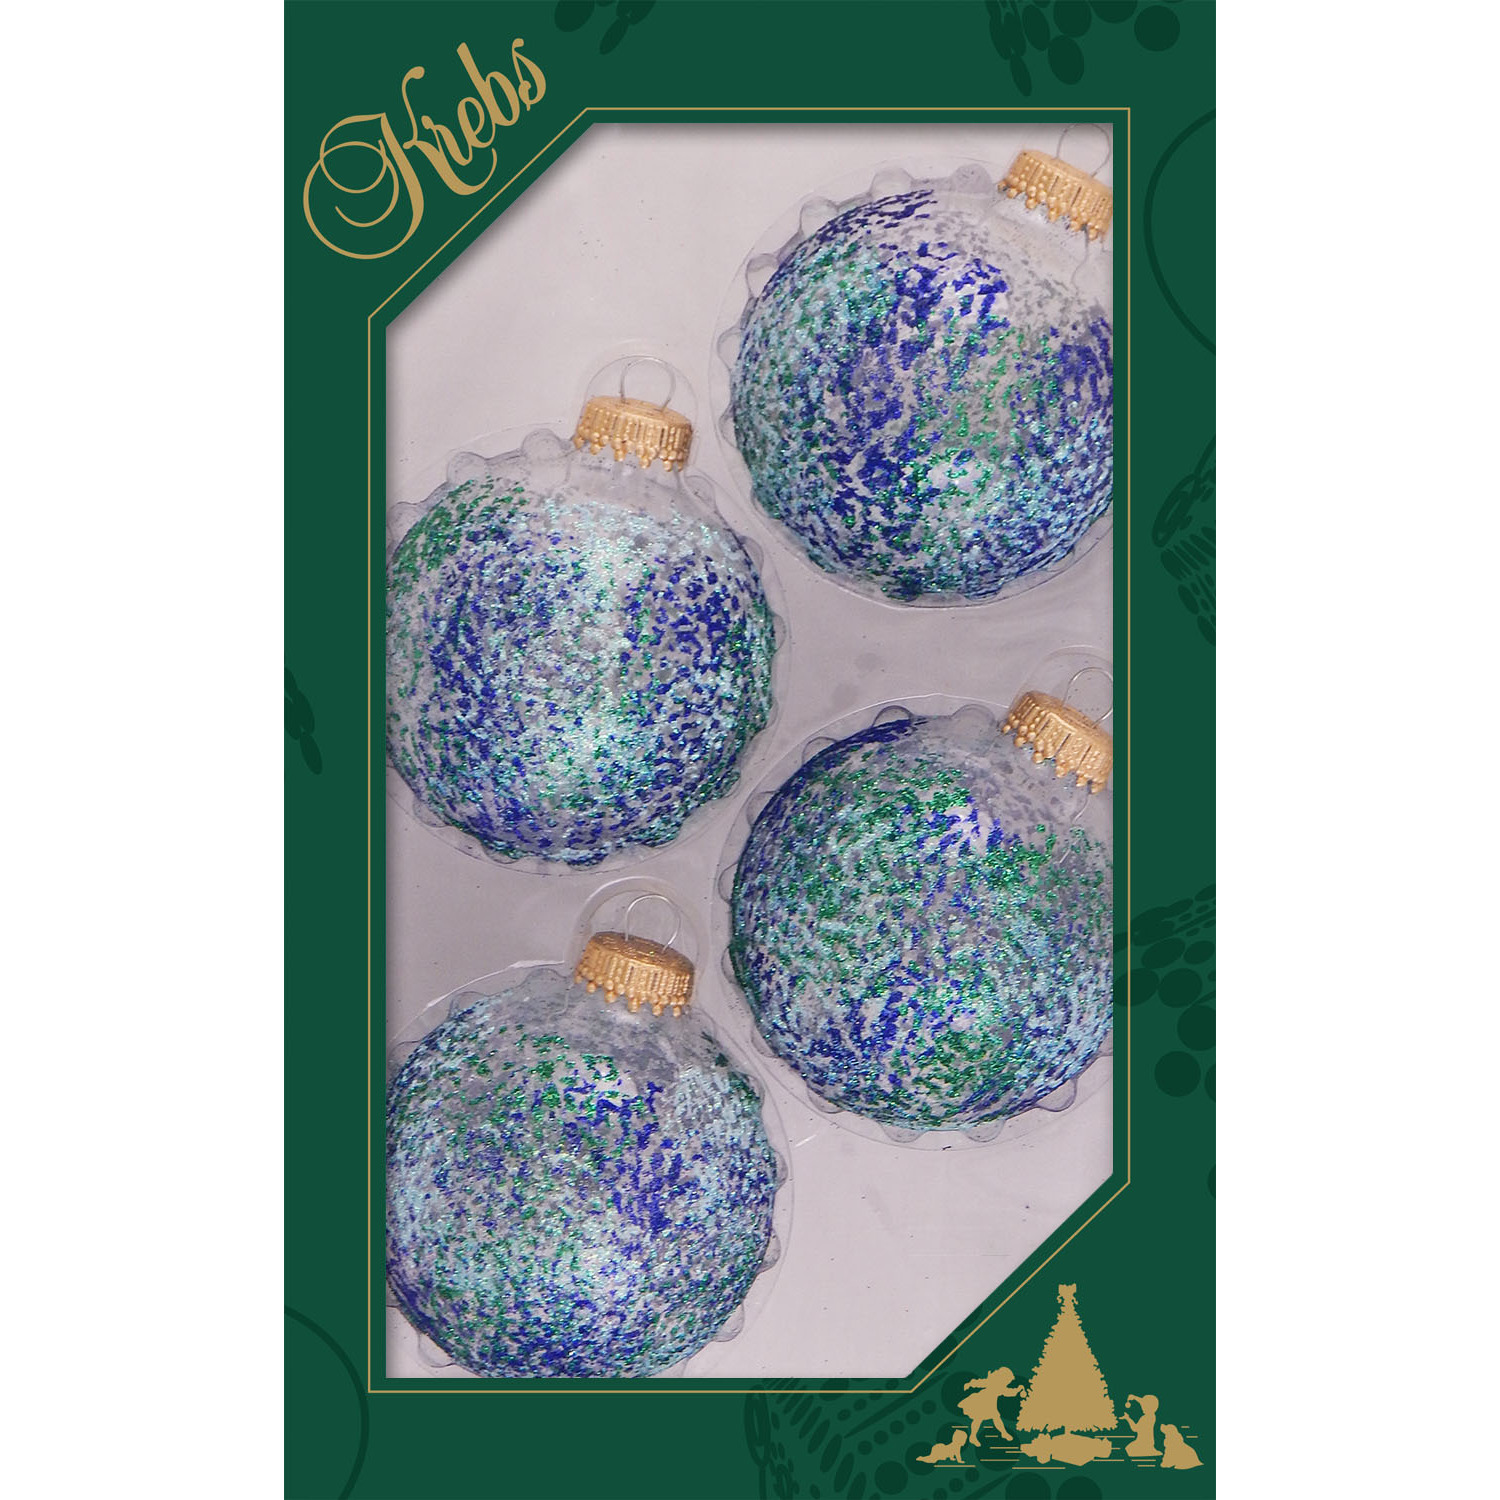 4x stuks luxe glazen kerstballen 7 cm transparant met blauwe glitters